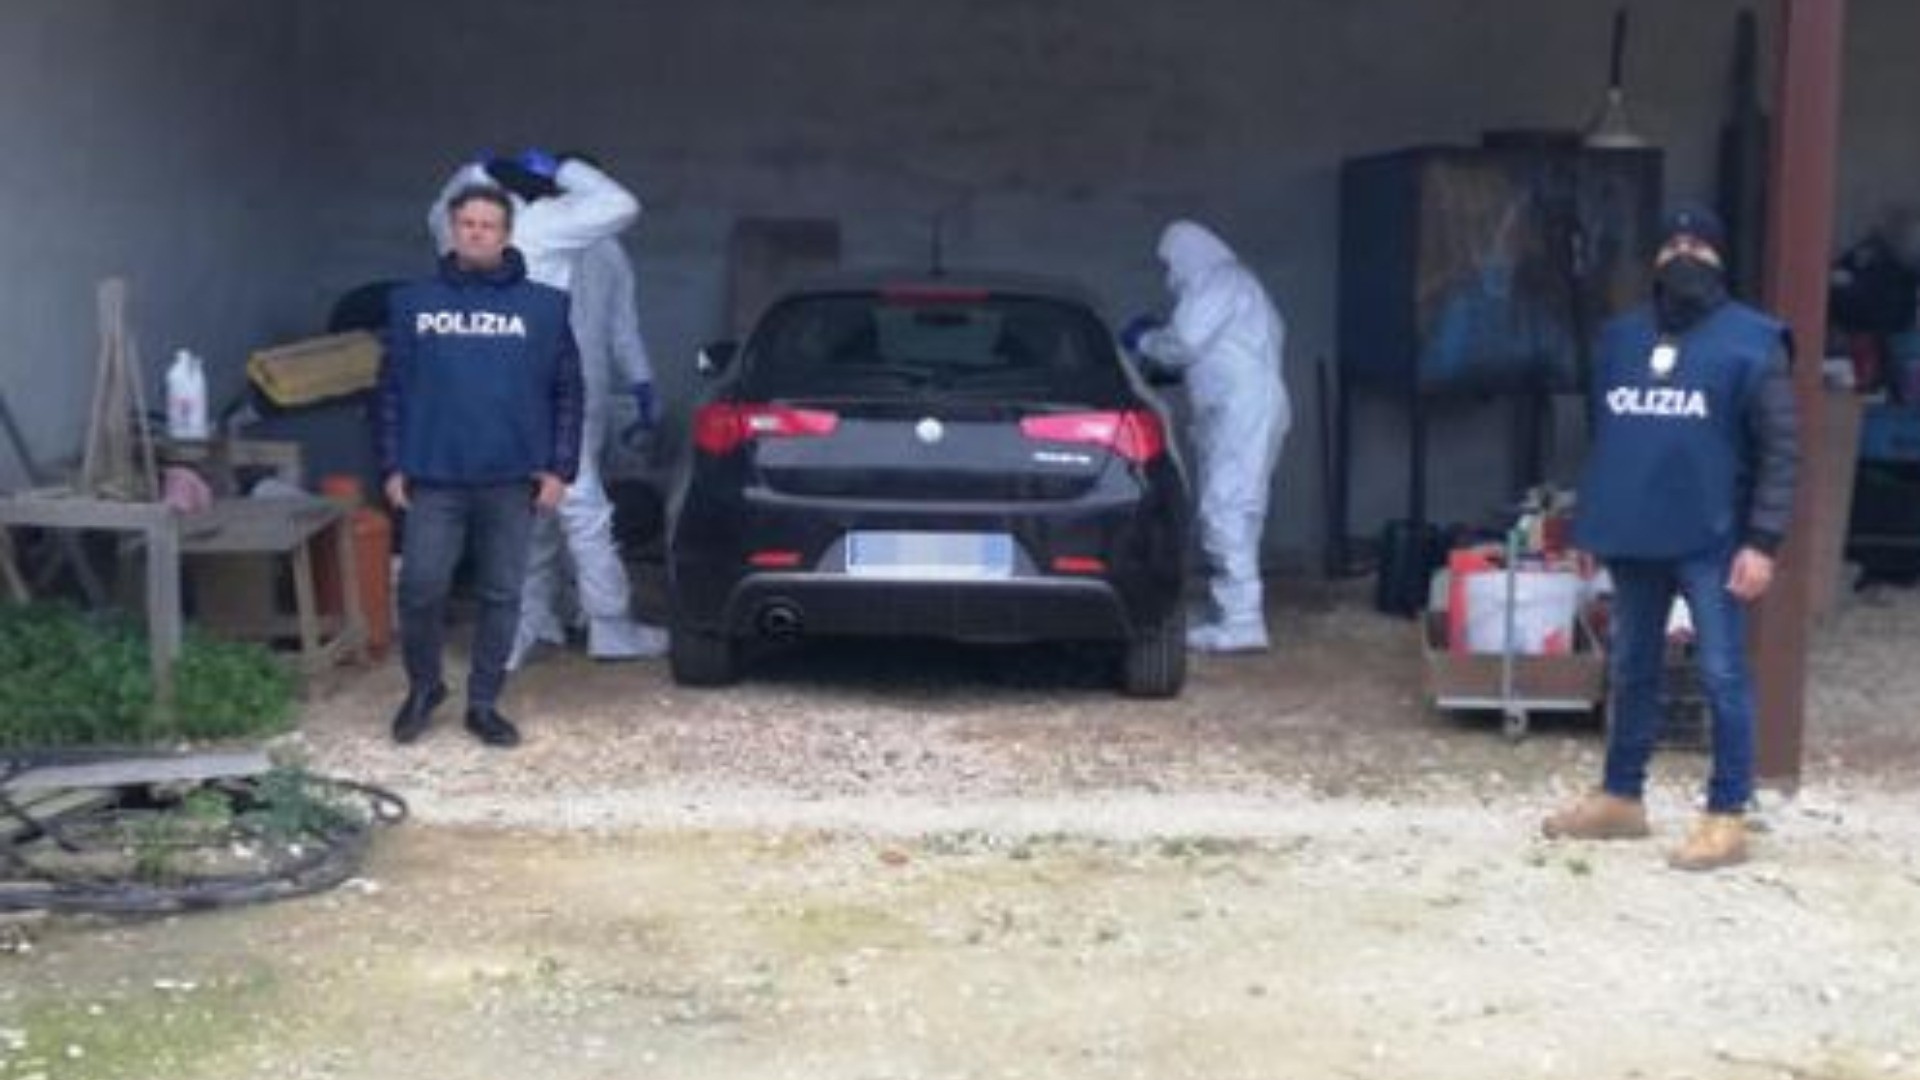 Trovata l'auto di Matteo Messina Denaro: era vicino alla casa dell'autista arrestato per favoreggiamento